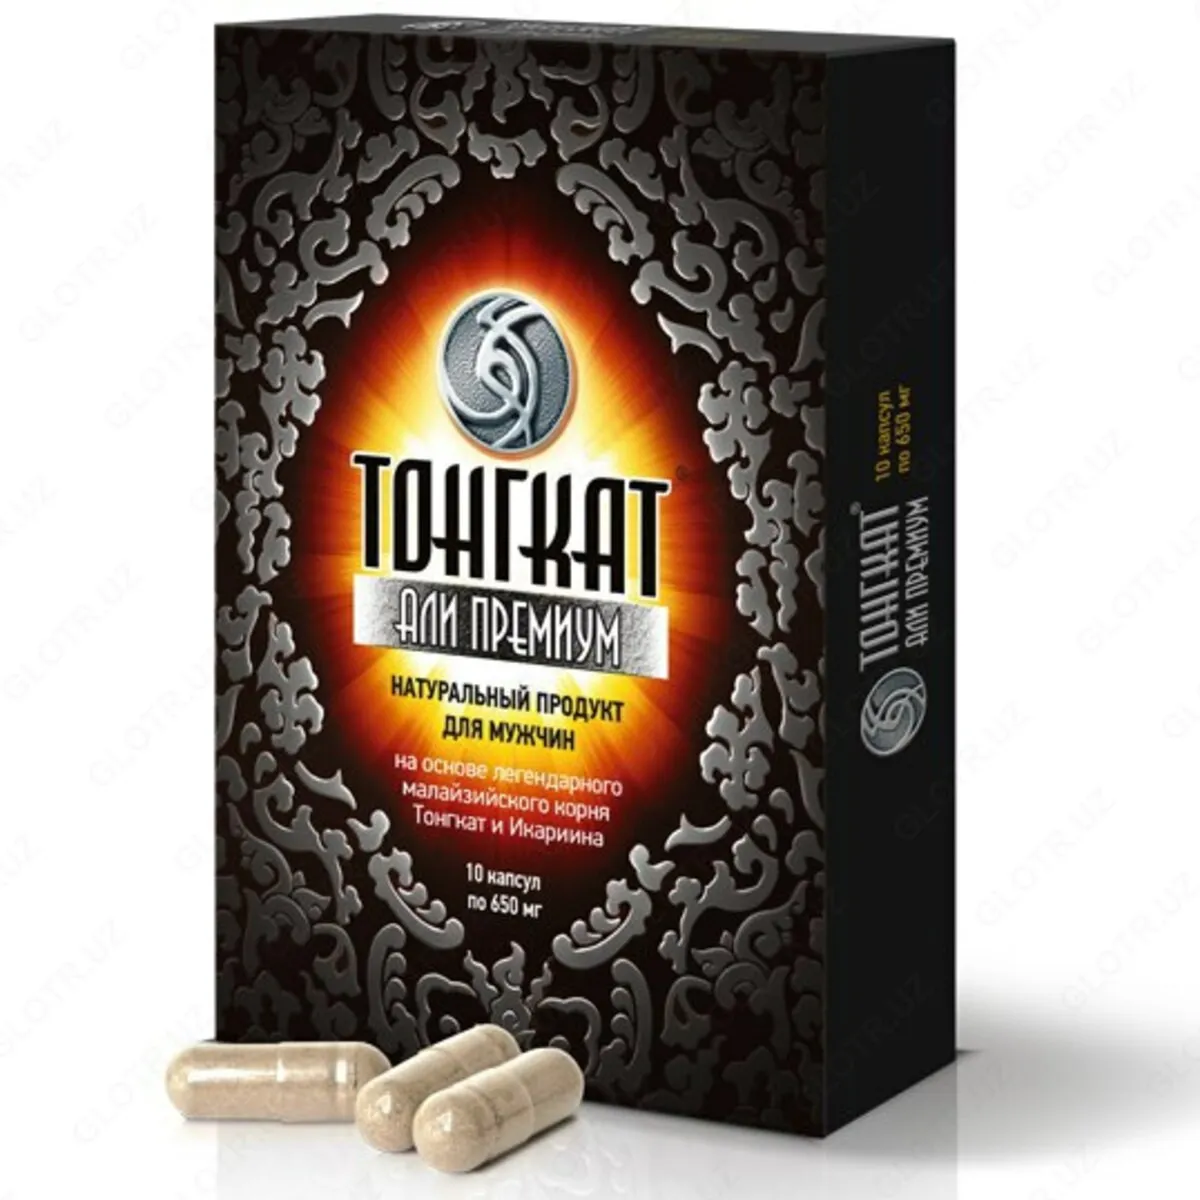 Премиум натуральный препарат для мужчин Тонгкат Али#1